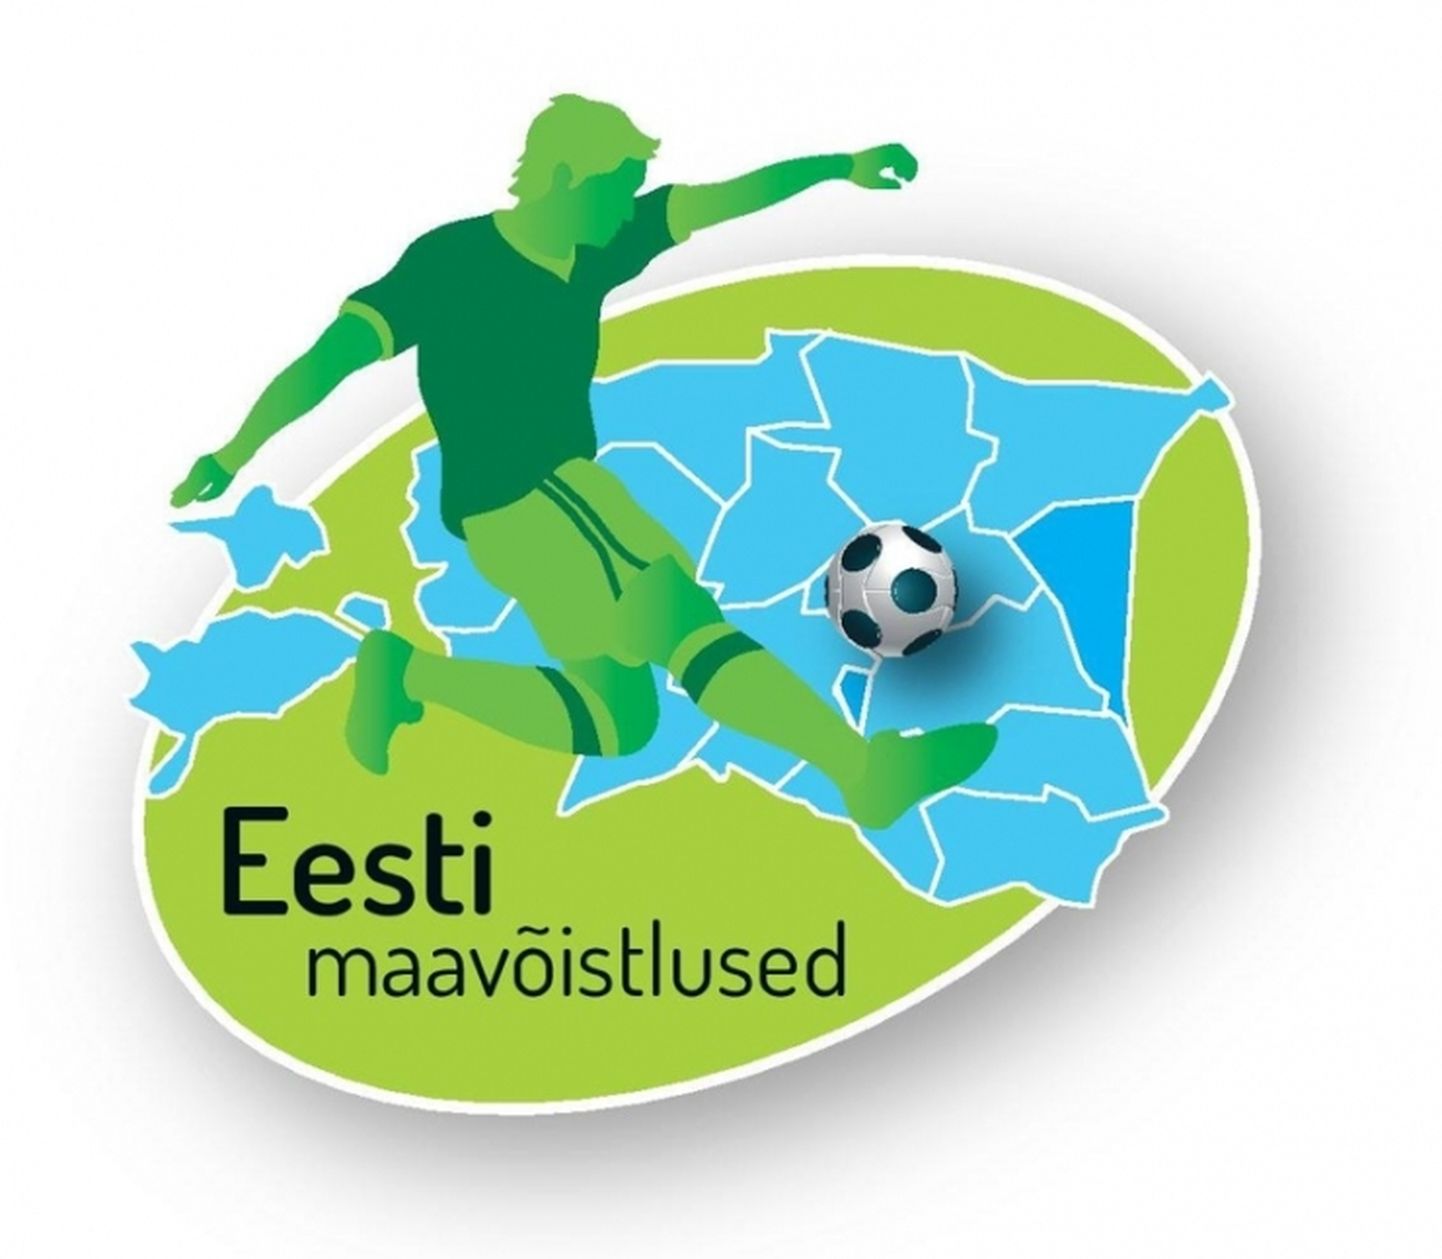 Eesti maavõistlused logo.